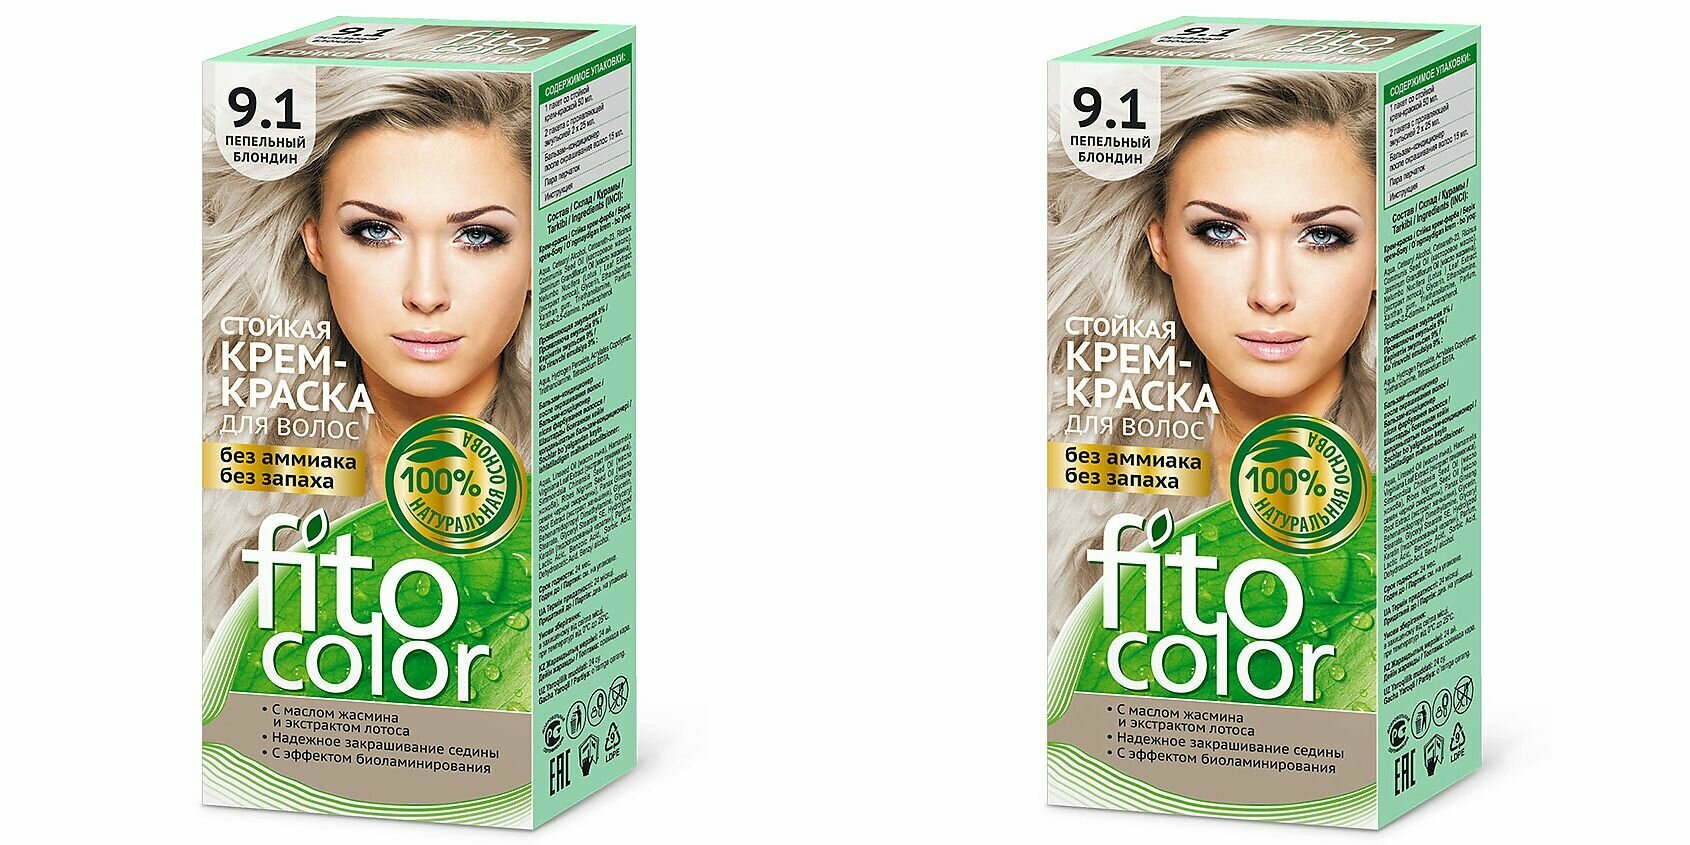 Fito Косметик Стойкая крем-краска для волос серии Fitocolor, тон 9.1, Пепельный Блондин, 115 мл, 2 штуки